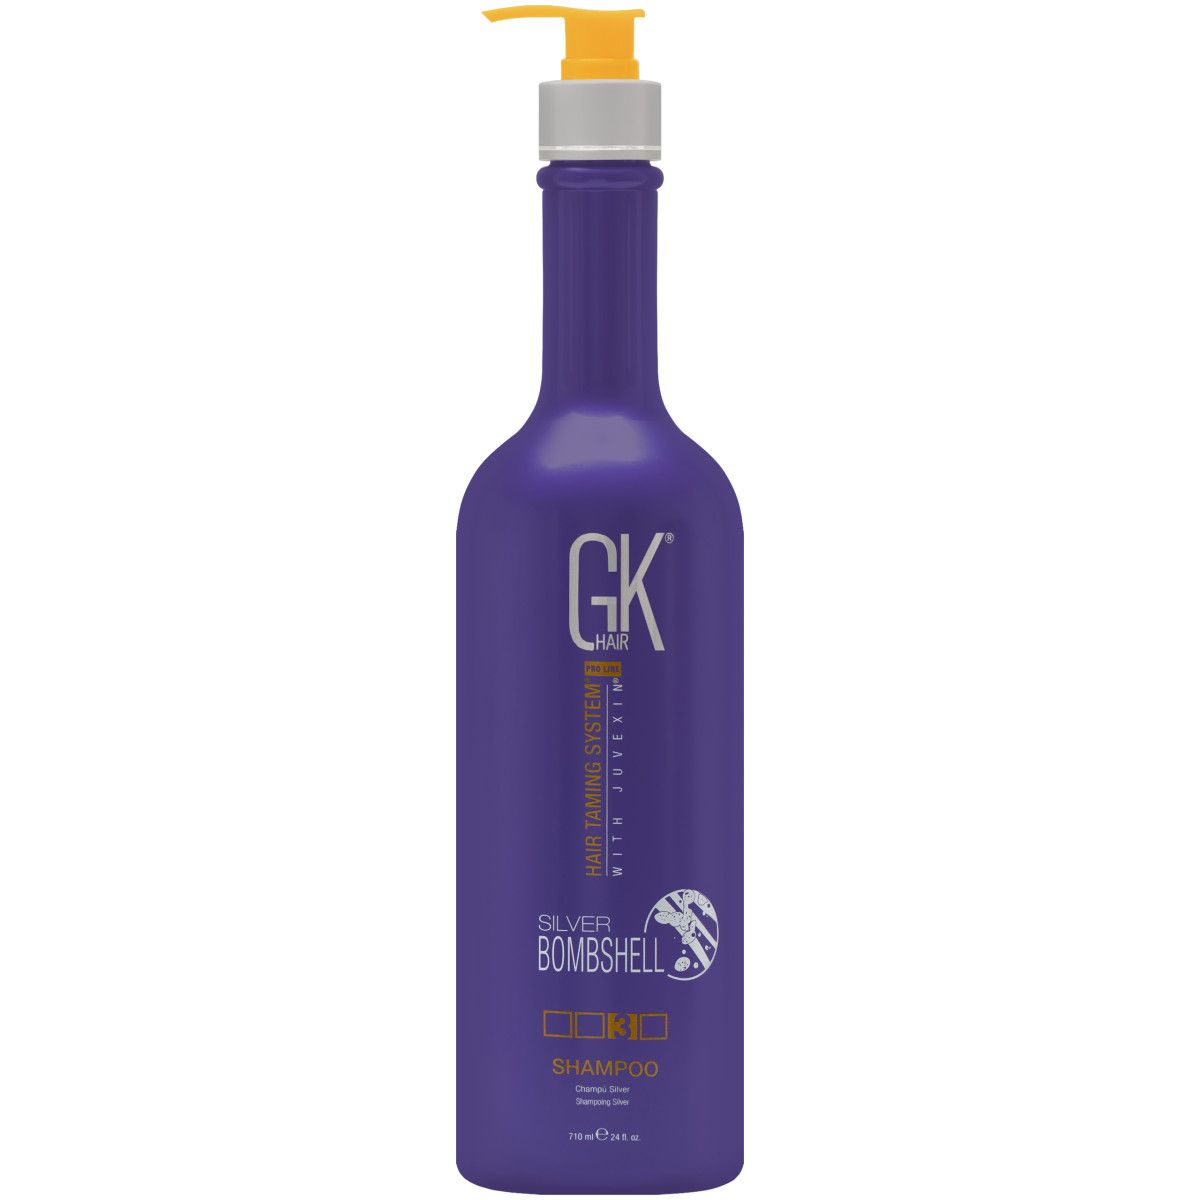 GKHair Silver Bombshell - szampon neutralizujący żółte refleksy, 710ml